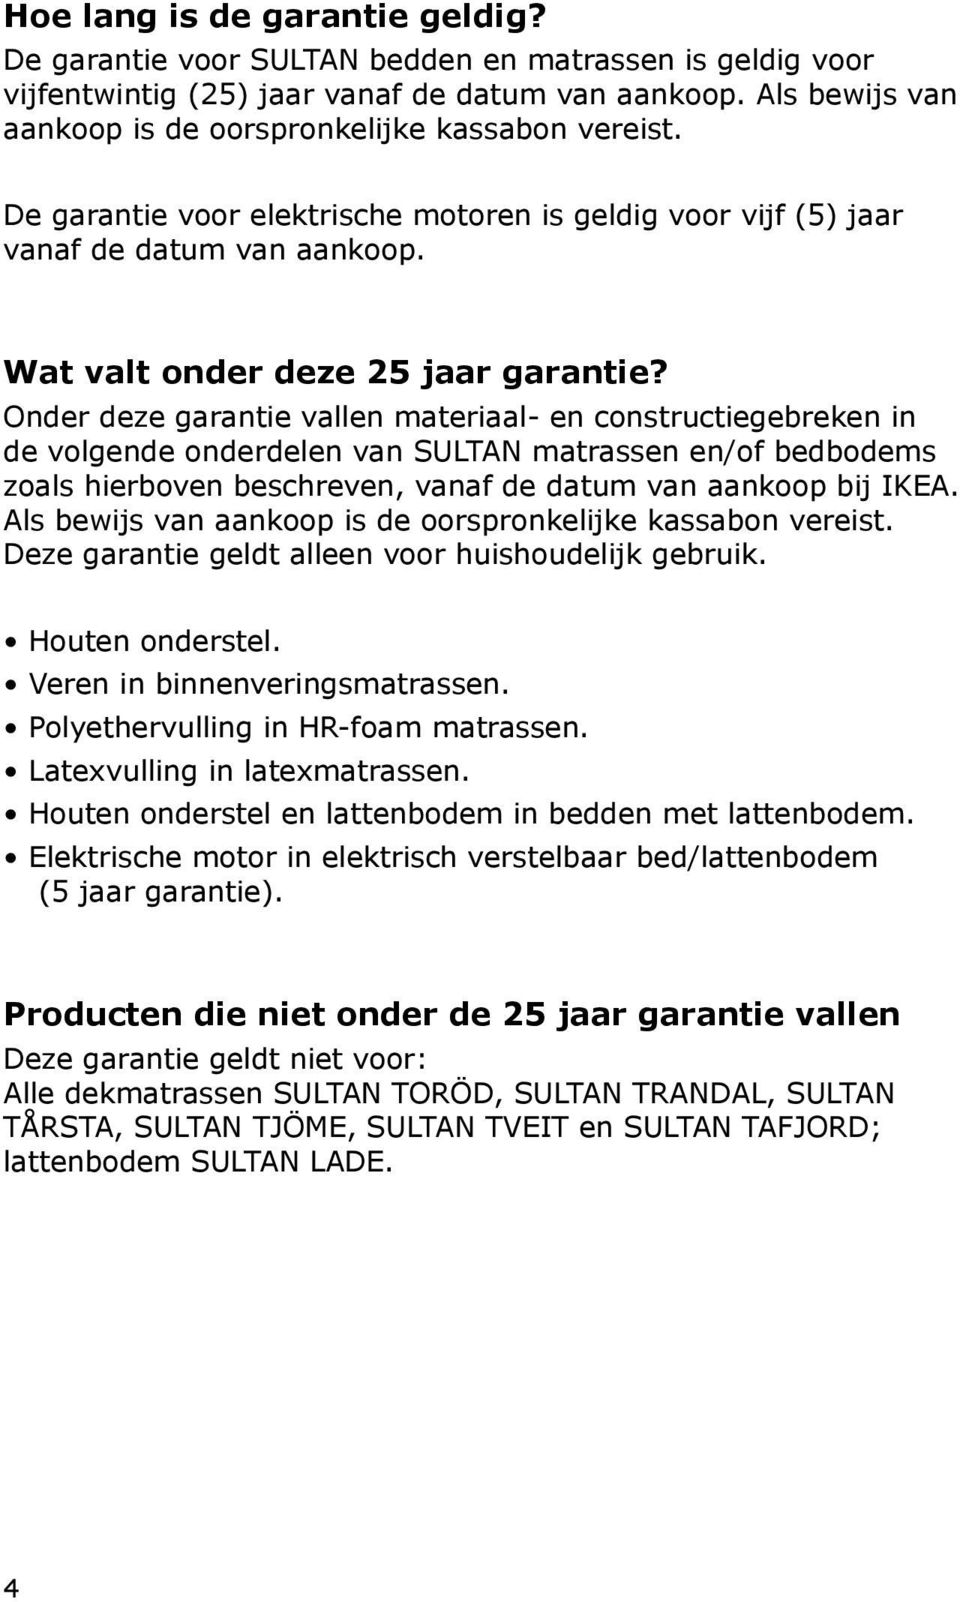 Onder deze garantie vallen materiaal- en constructiegebreken in de volgende onderdelen van SULTAN matrassen en/of bedbodems zoals hierboven beschreven, vanaf de datum van aankoop bij IKEA.